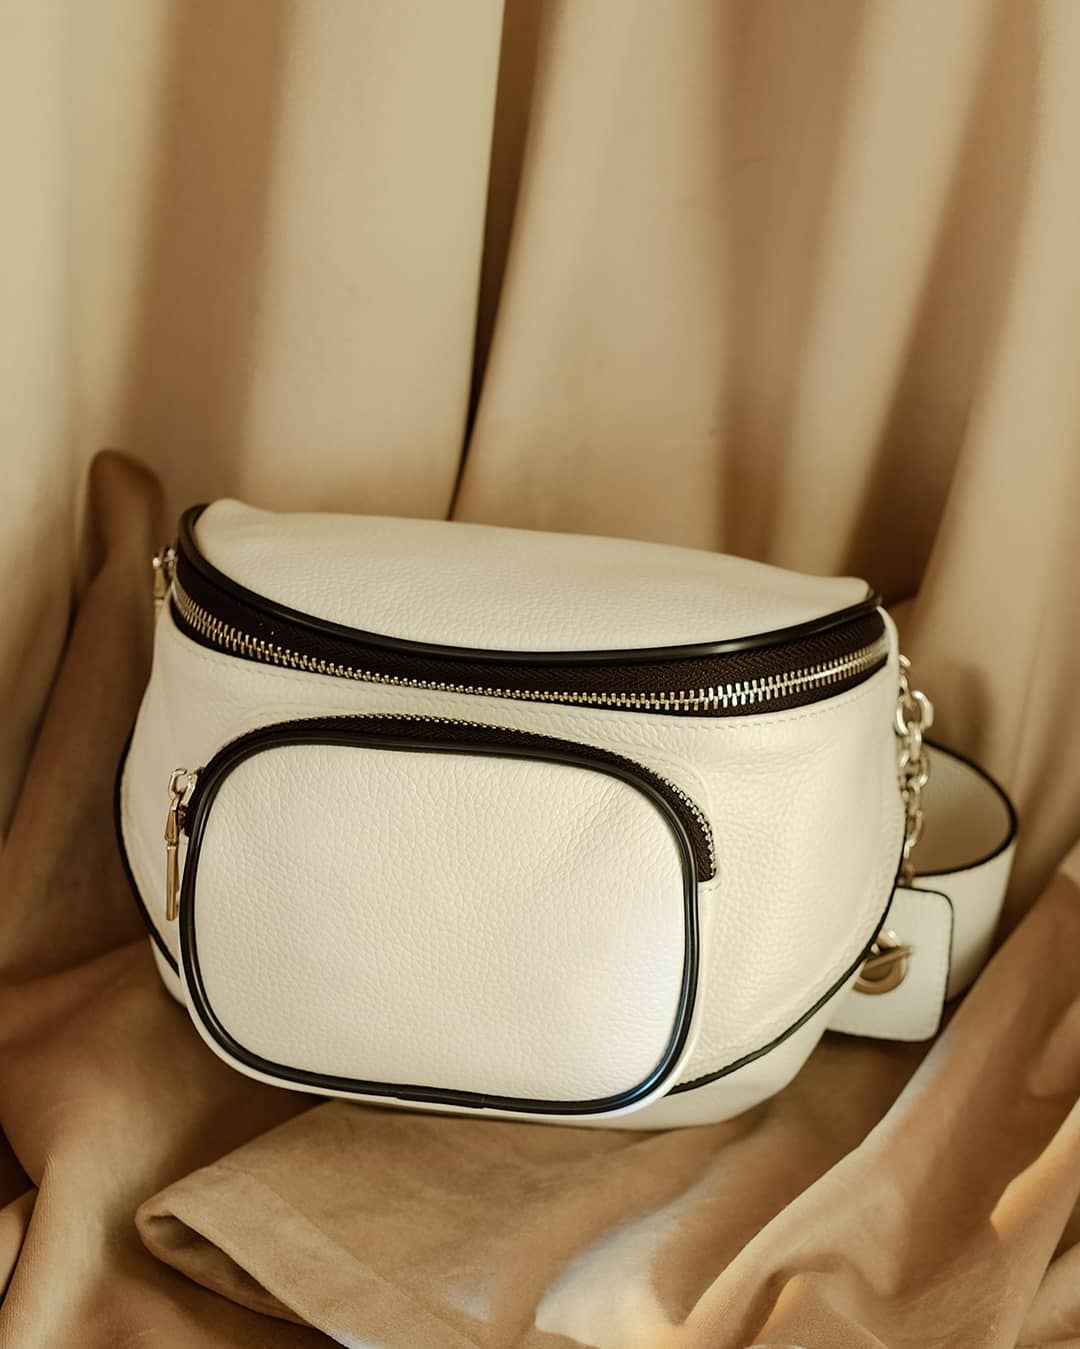 TERVOLINA - Как выглядит идеальная сумка на лето? Белый цвет, рифмующийся с любой палитрой, карман для мелочей, удобный ремешок на плечо и приятная на ощупь мягкая кожа – наши главные критерии. С тако...